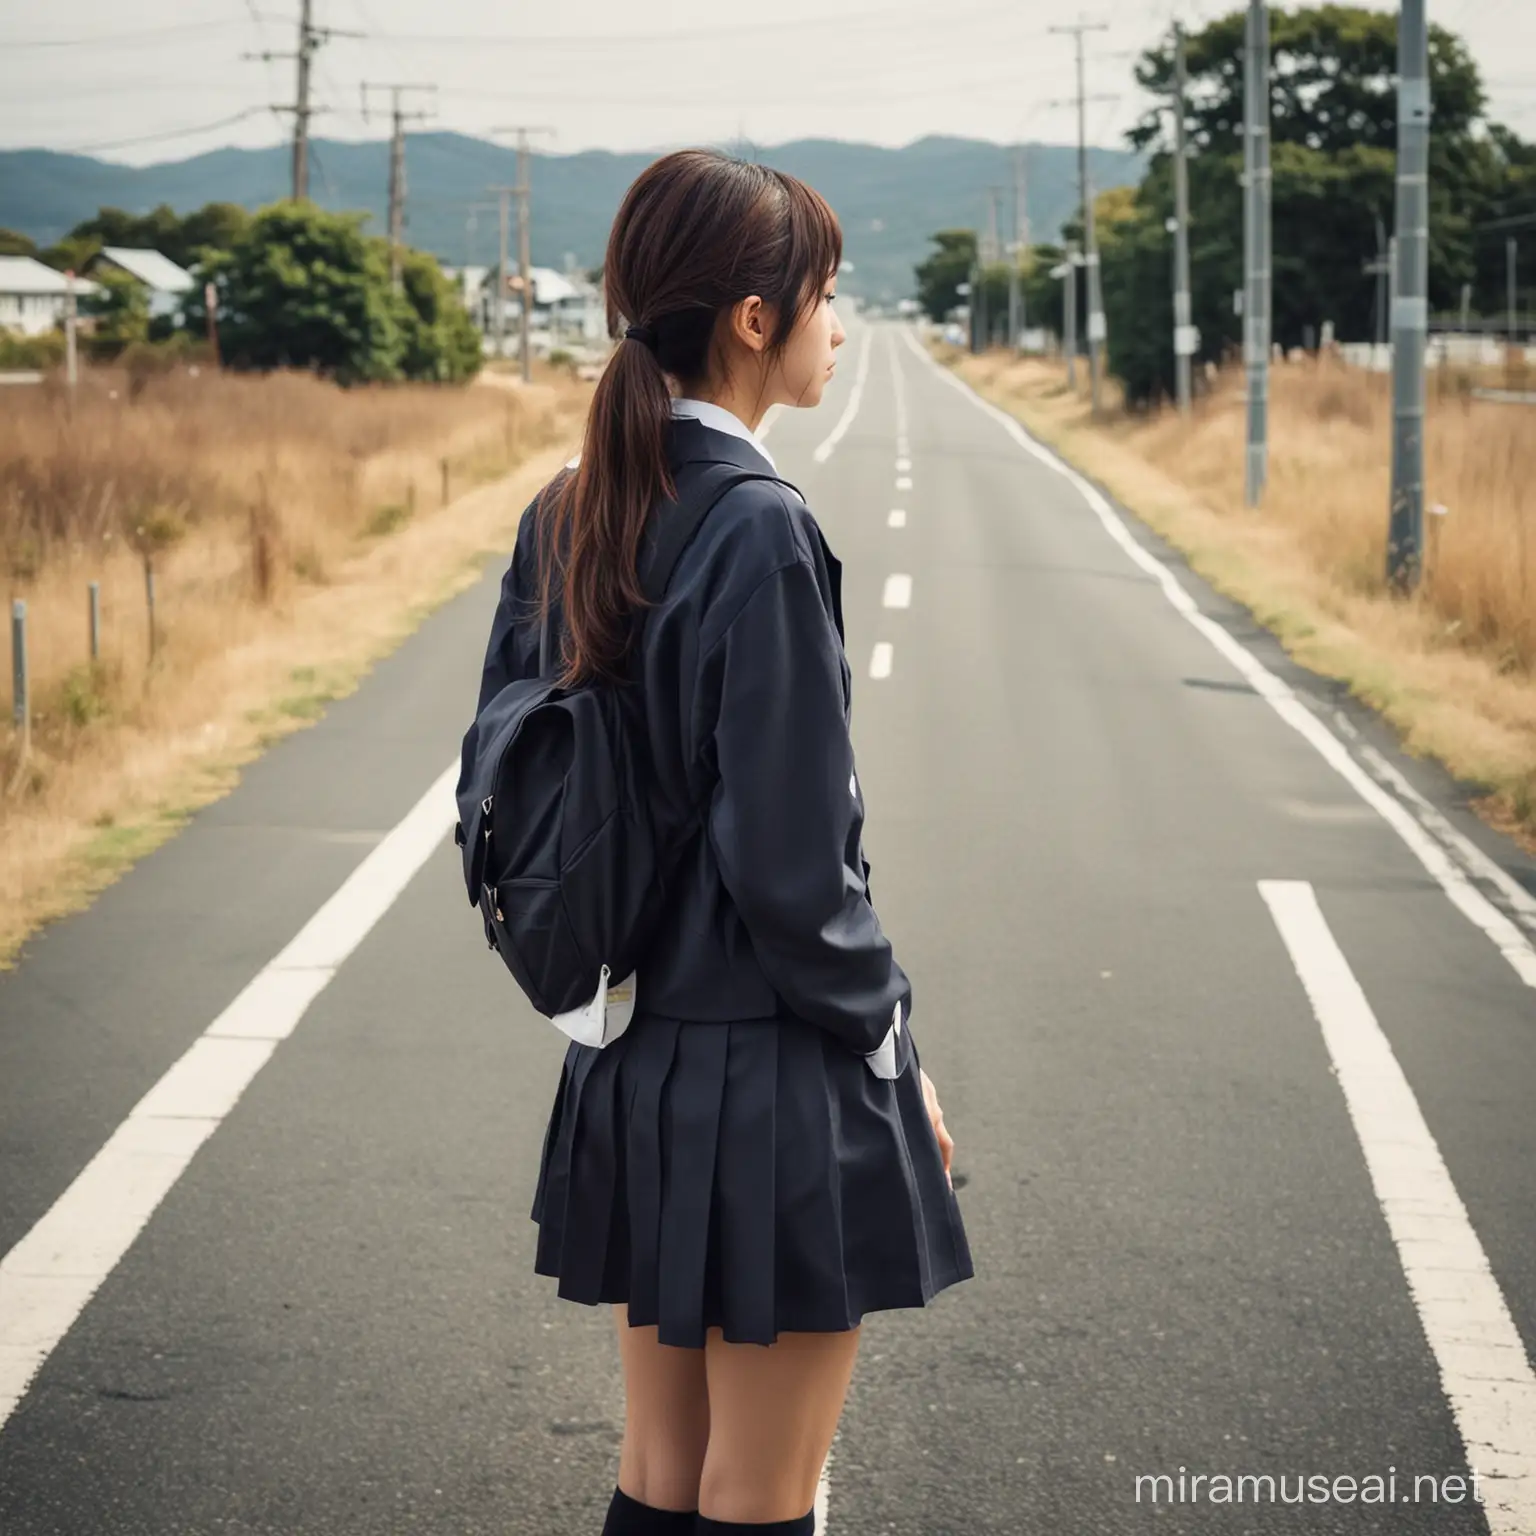 女子高生, 背向馬路, 思考人生, 日本學生校服